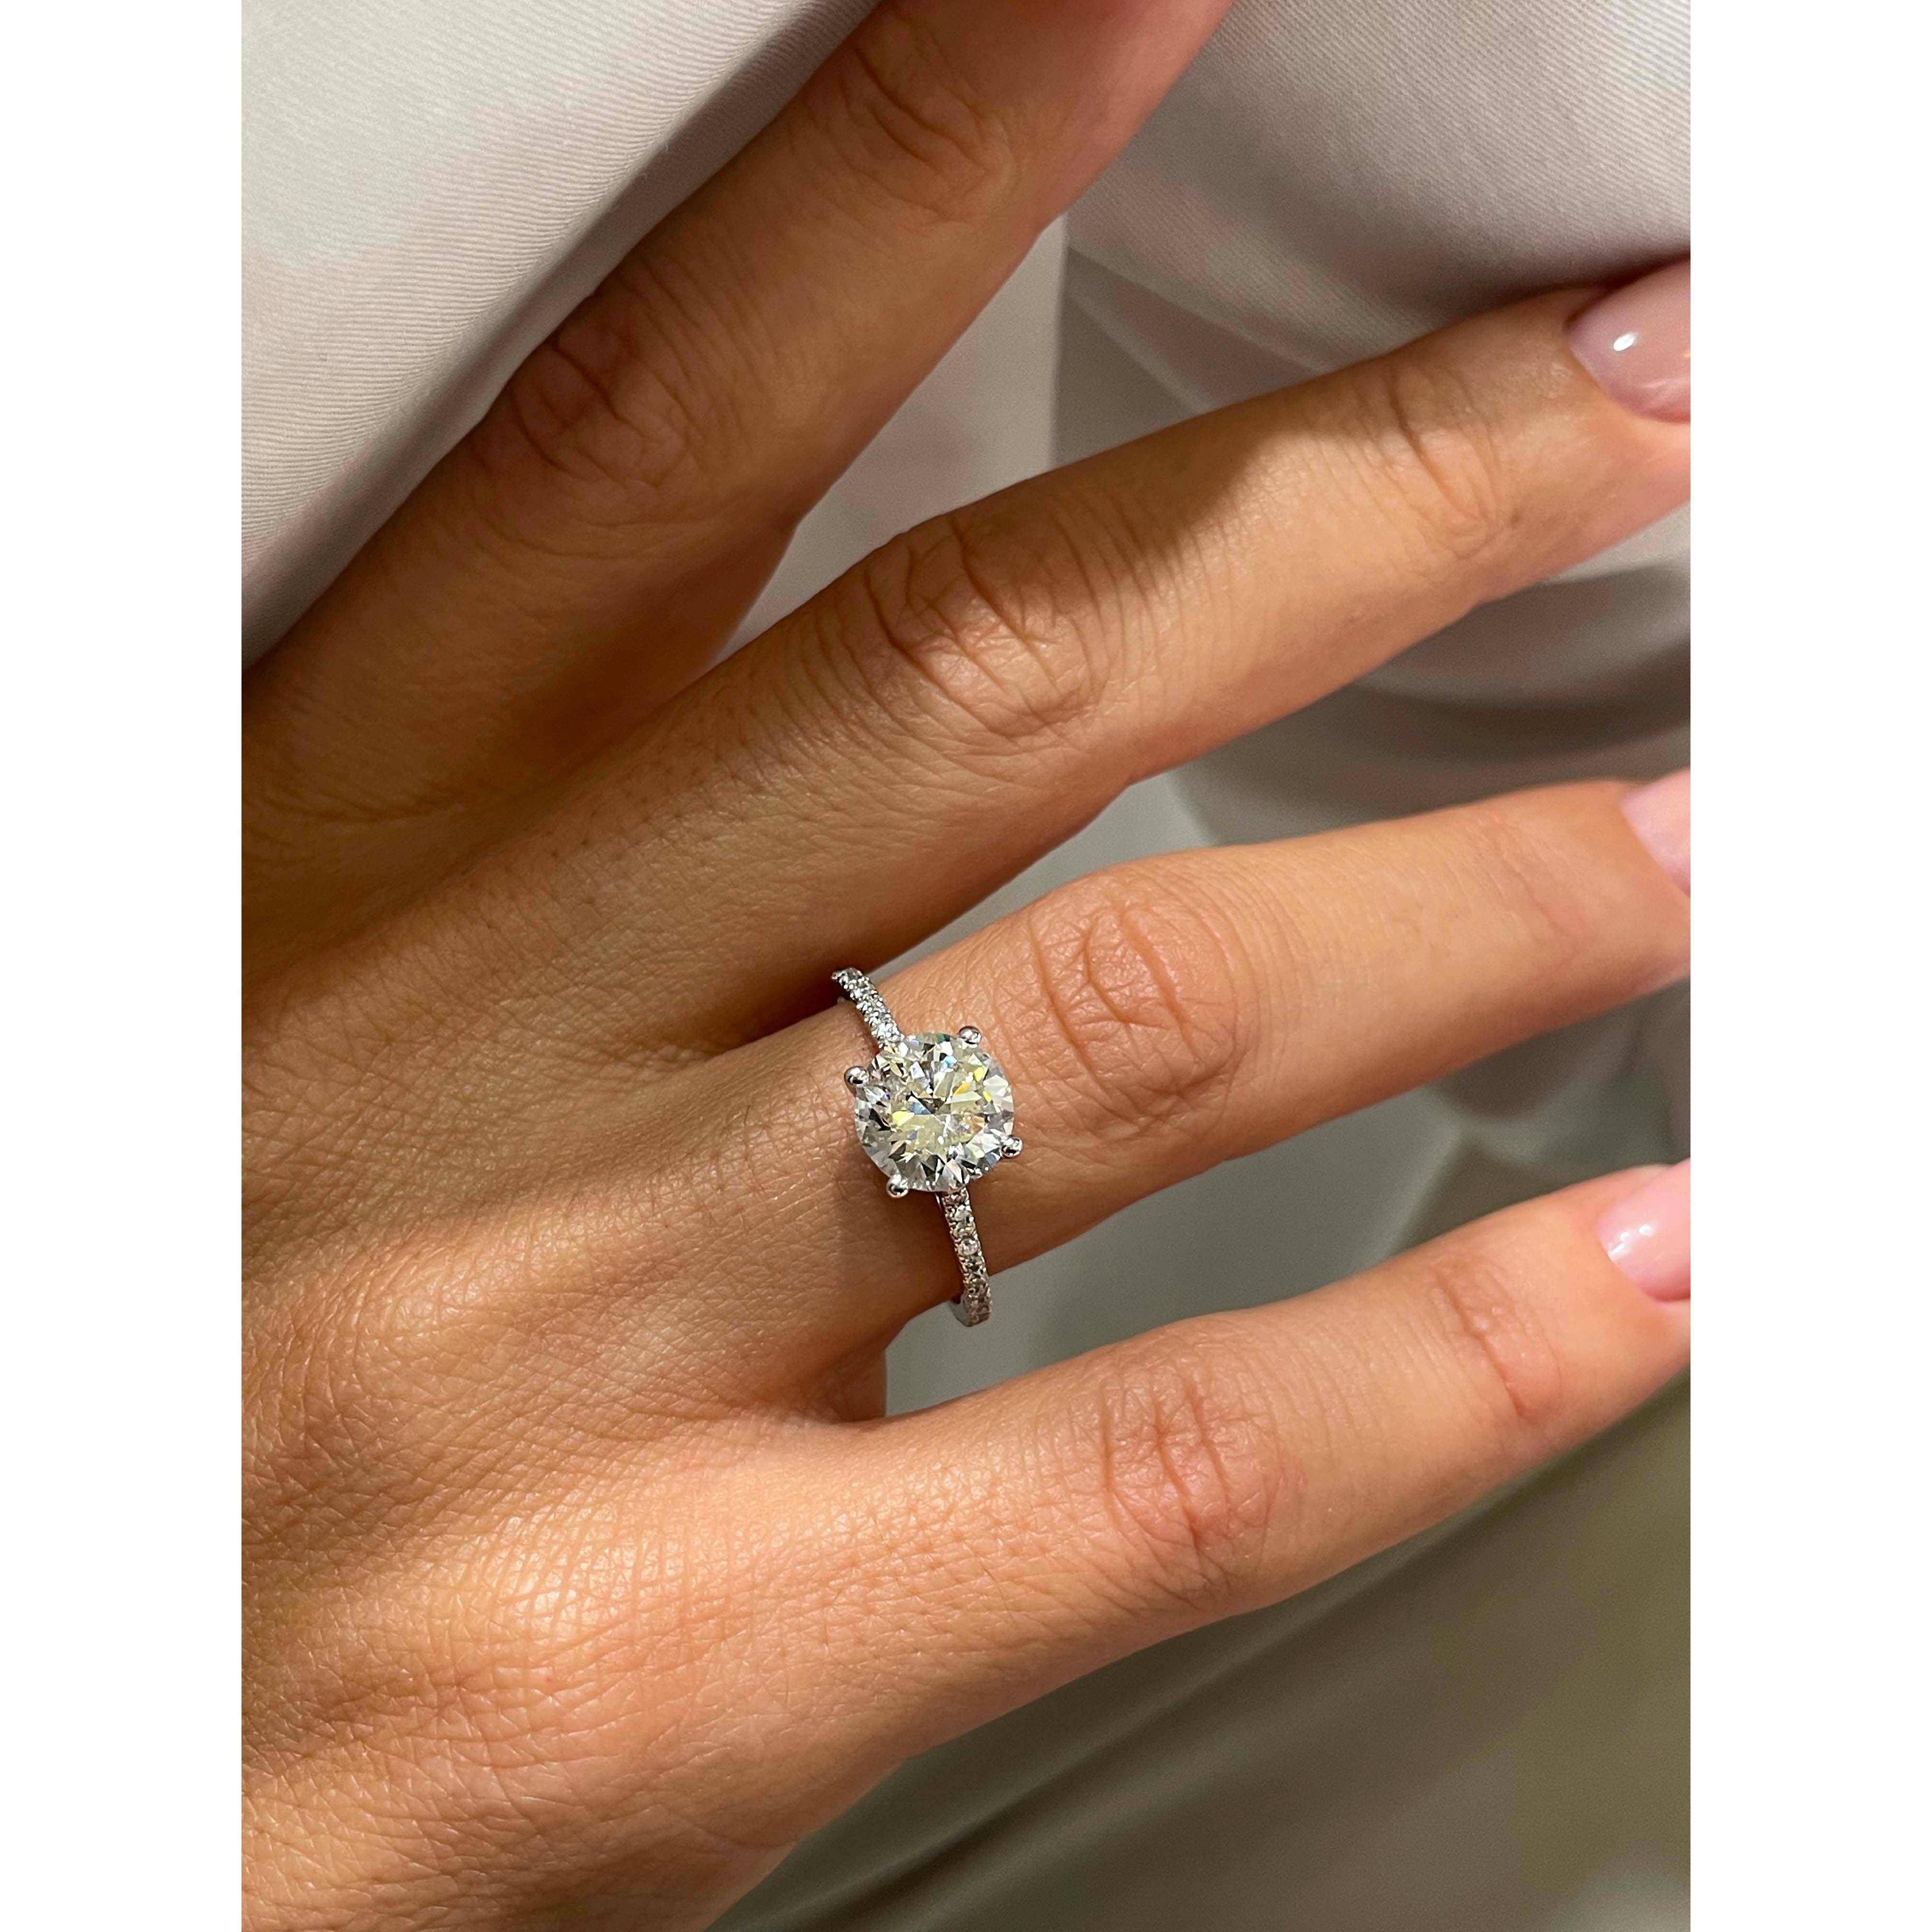 Anna Diamond Engagement Ring   (2.12 Carat) -Platinum